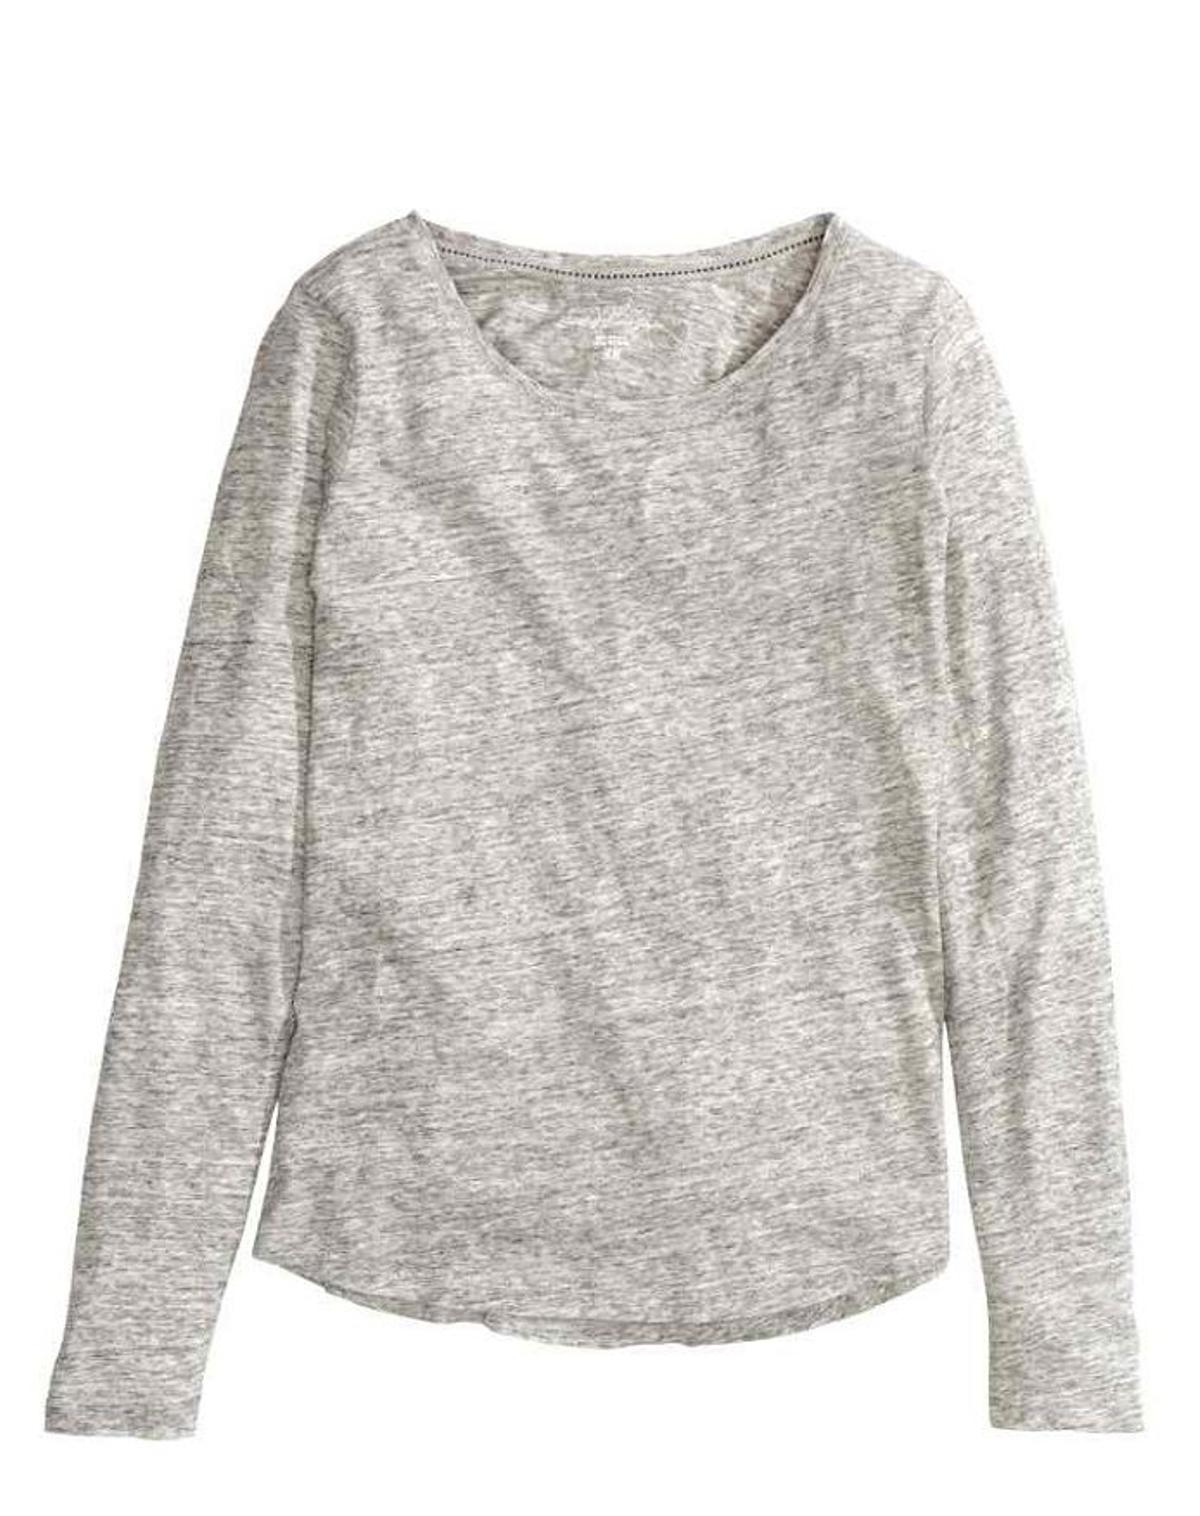 Básicos otoño 2015, camiseta gris